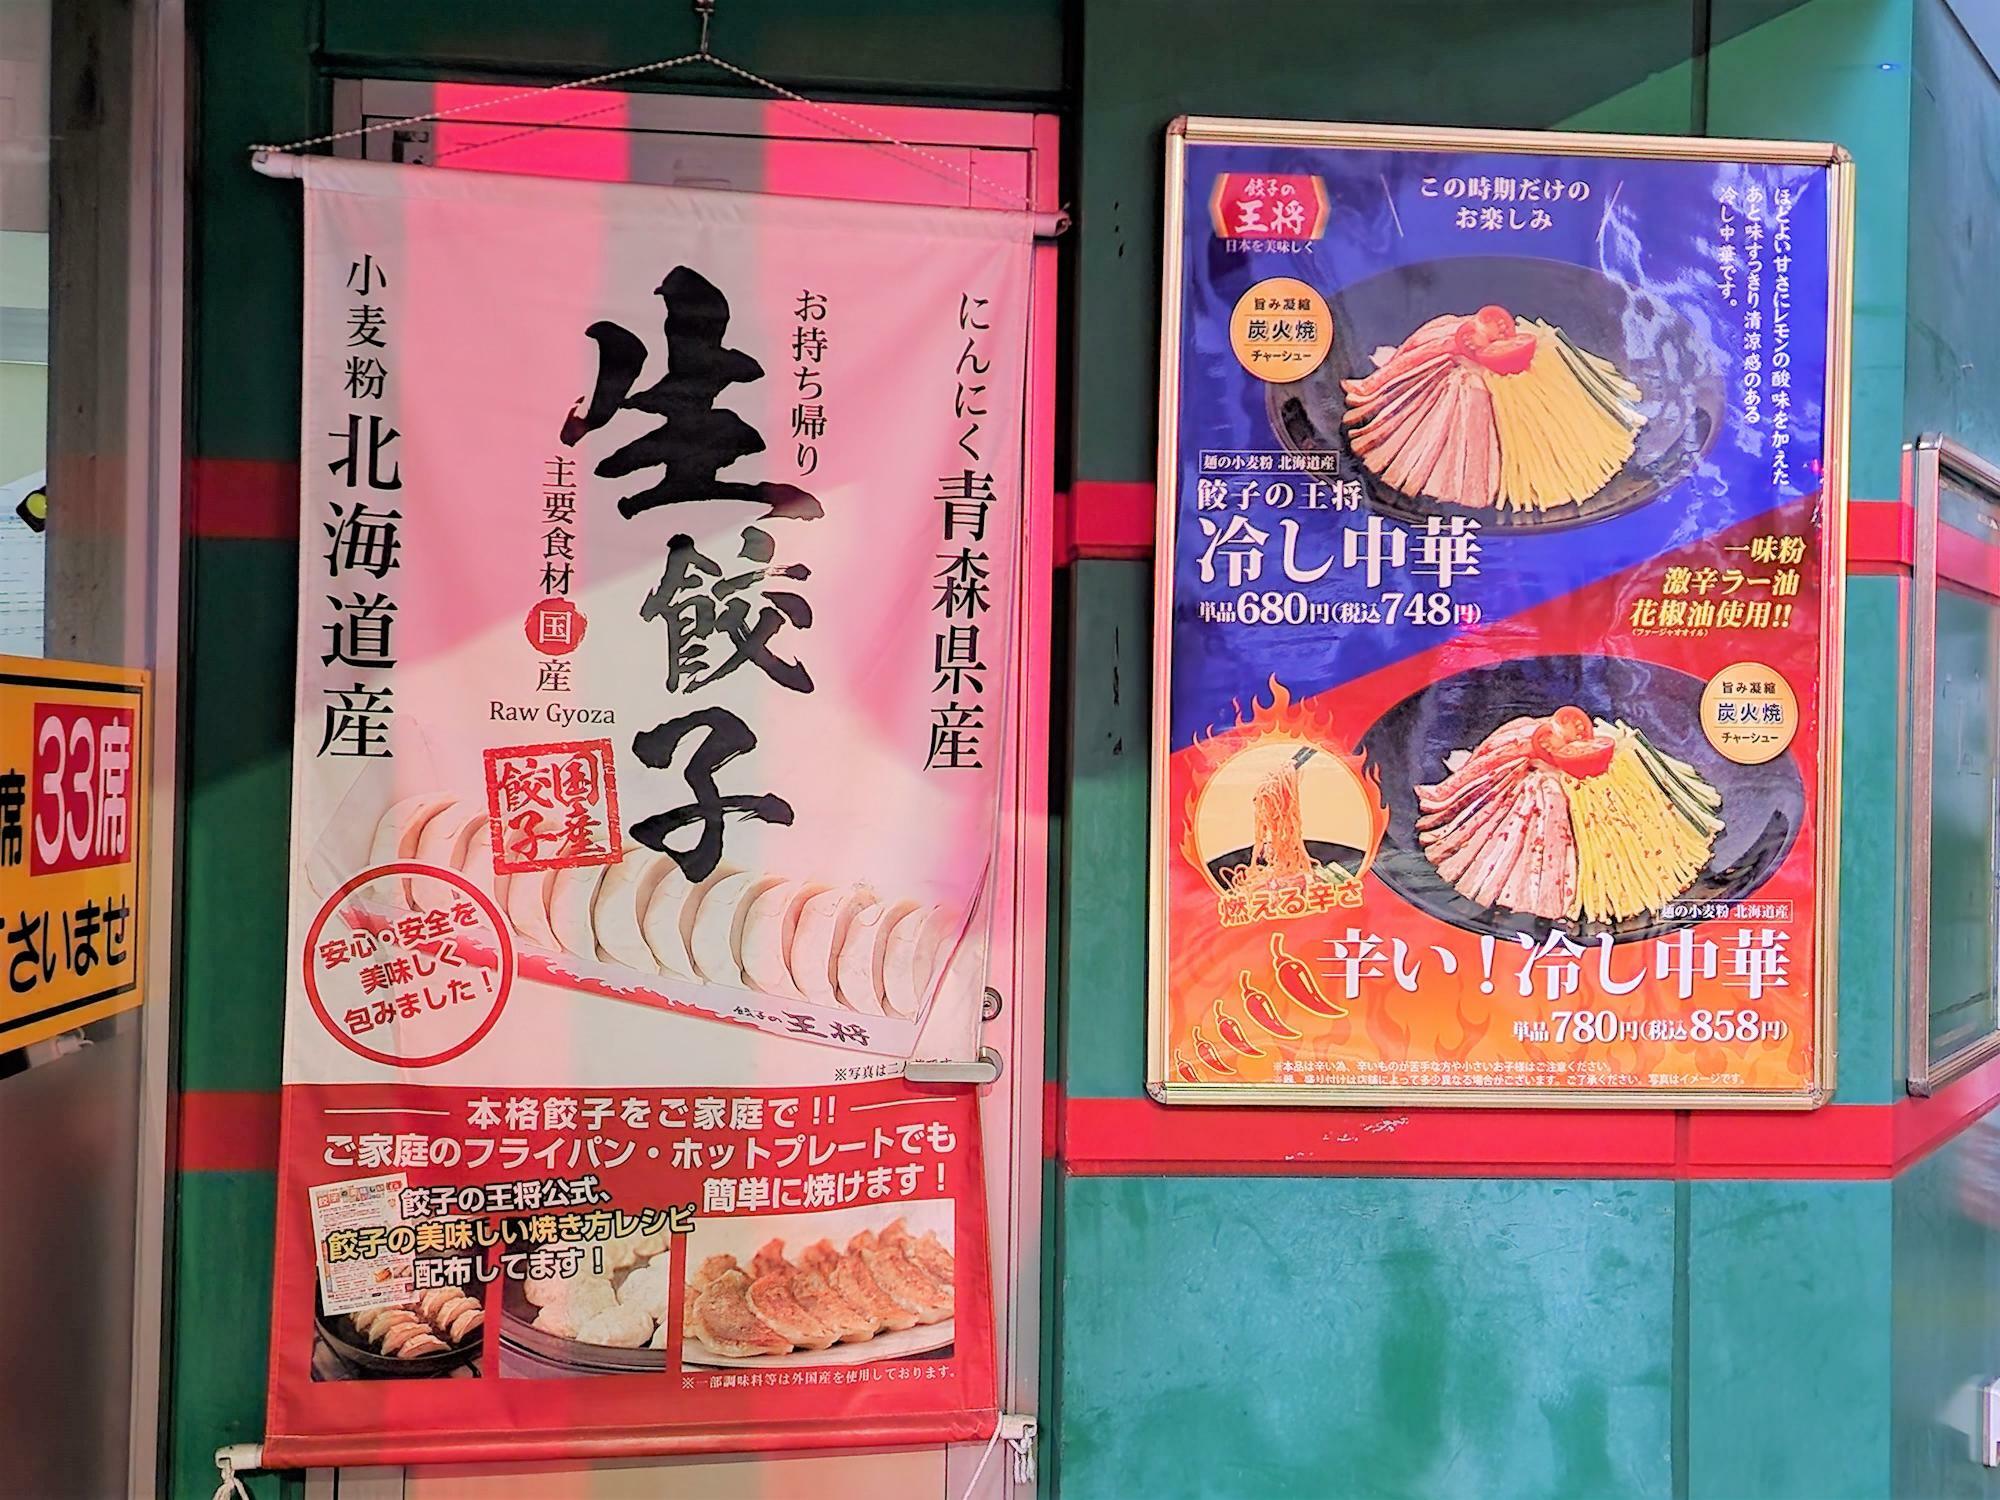 現在も営業中の「餃子の王将 徳島駅前店」に掲示されていたメニュー。